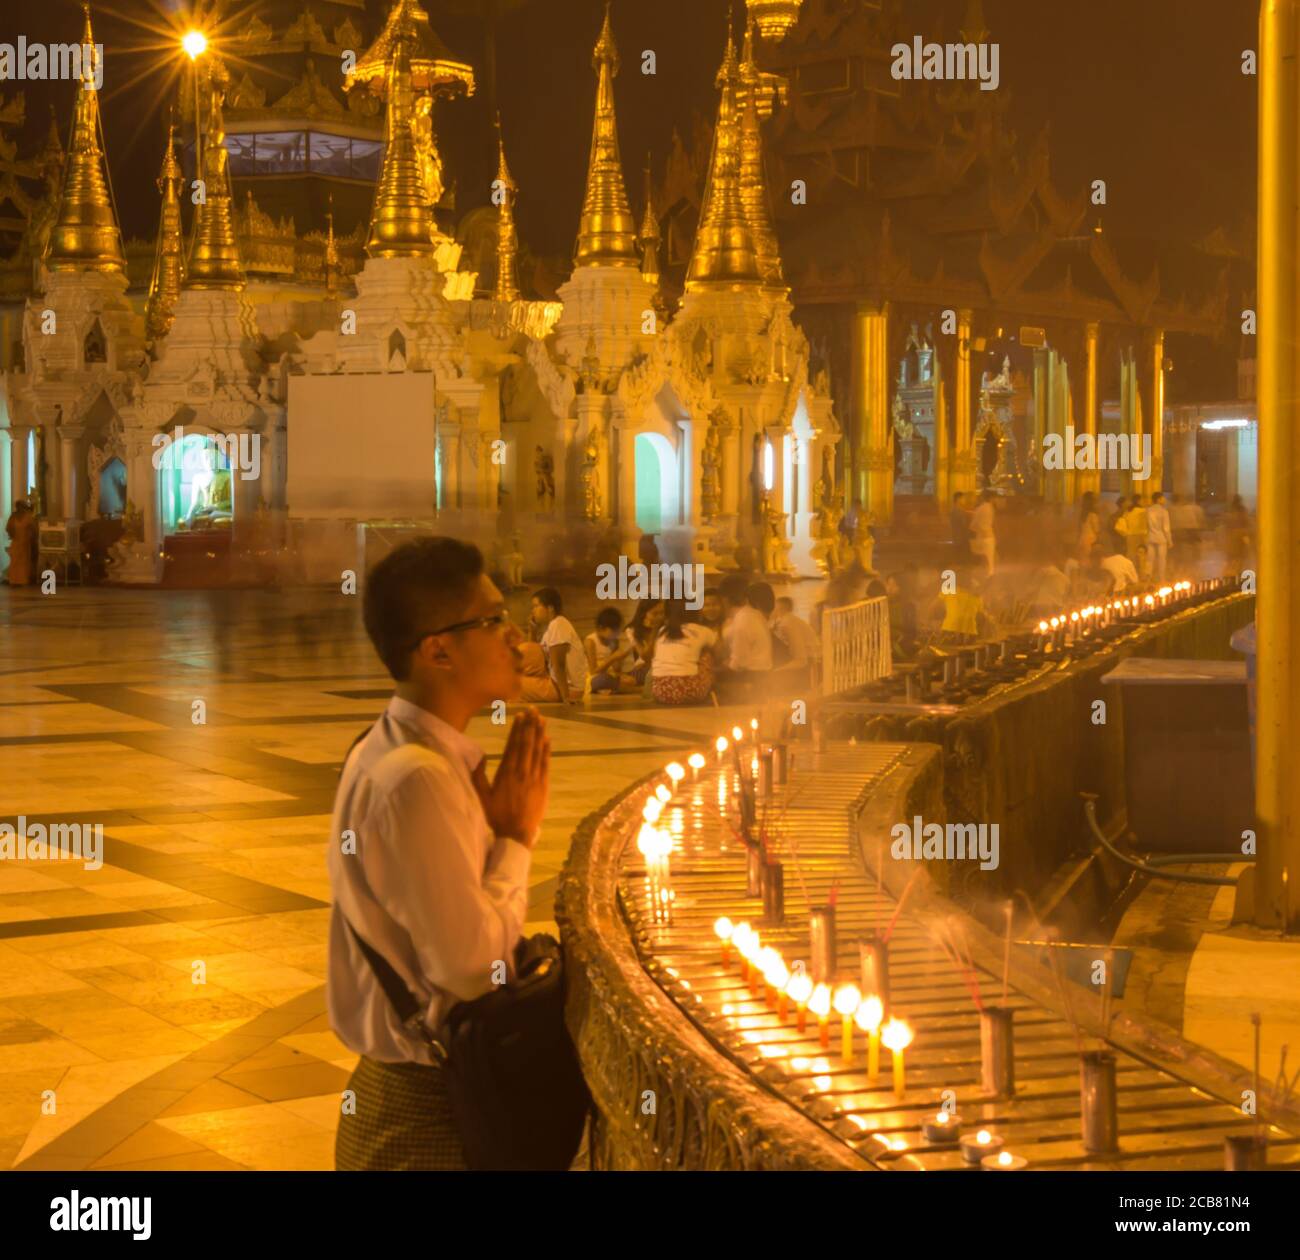 Yangon, Myanmar - 18 dicembre 2017: Un uomo che prega accanto ad alcune candele allo Shwedagon Pago di Yangon, Myanmar Foto Stock